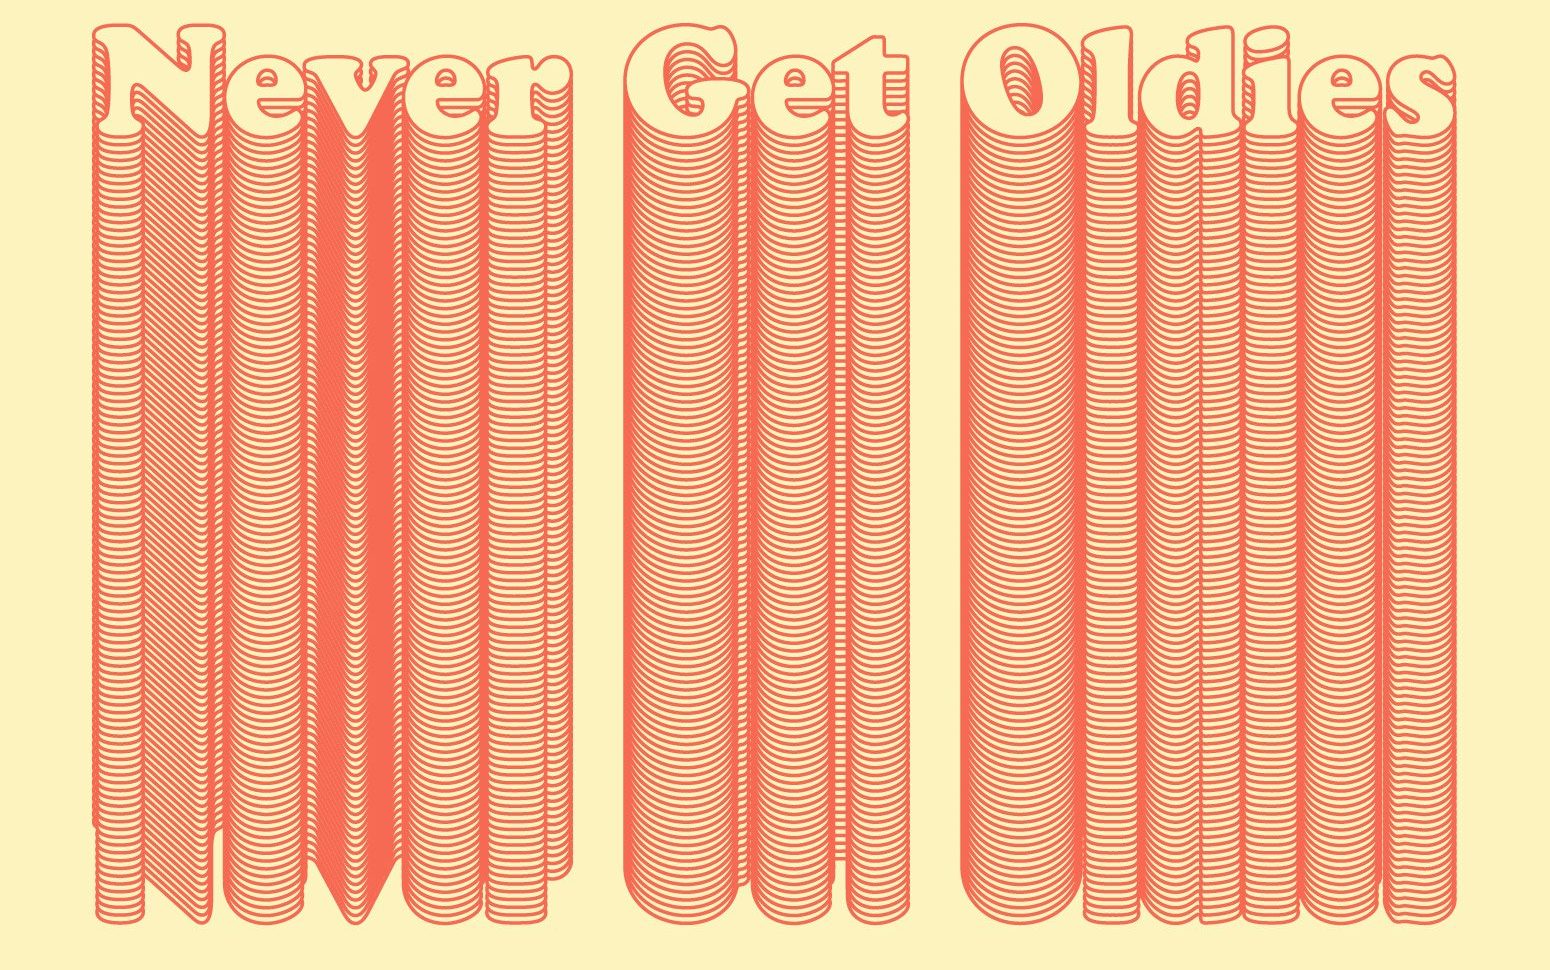 Never Get Oldies